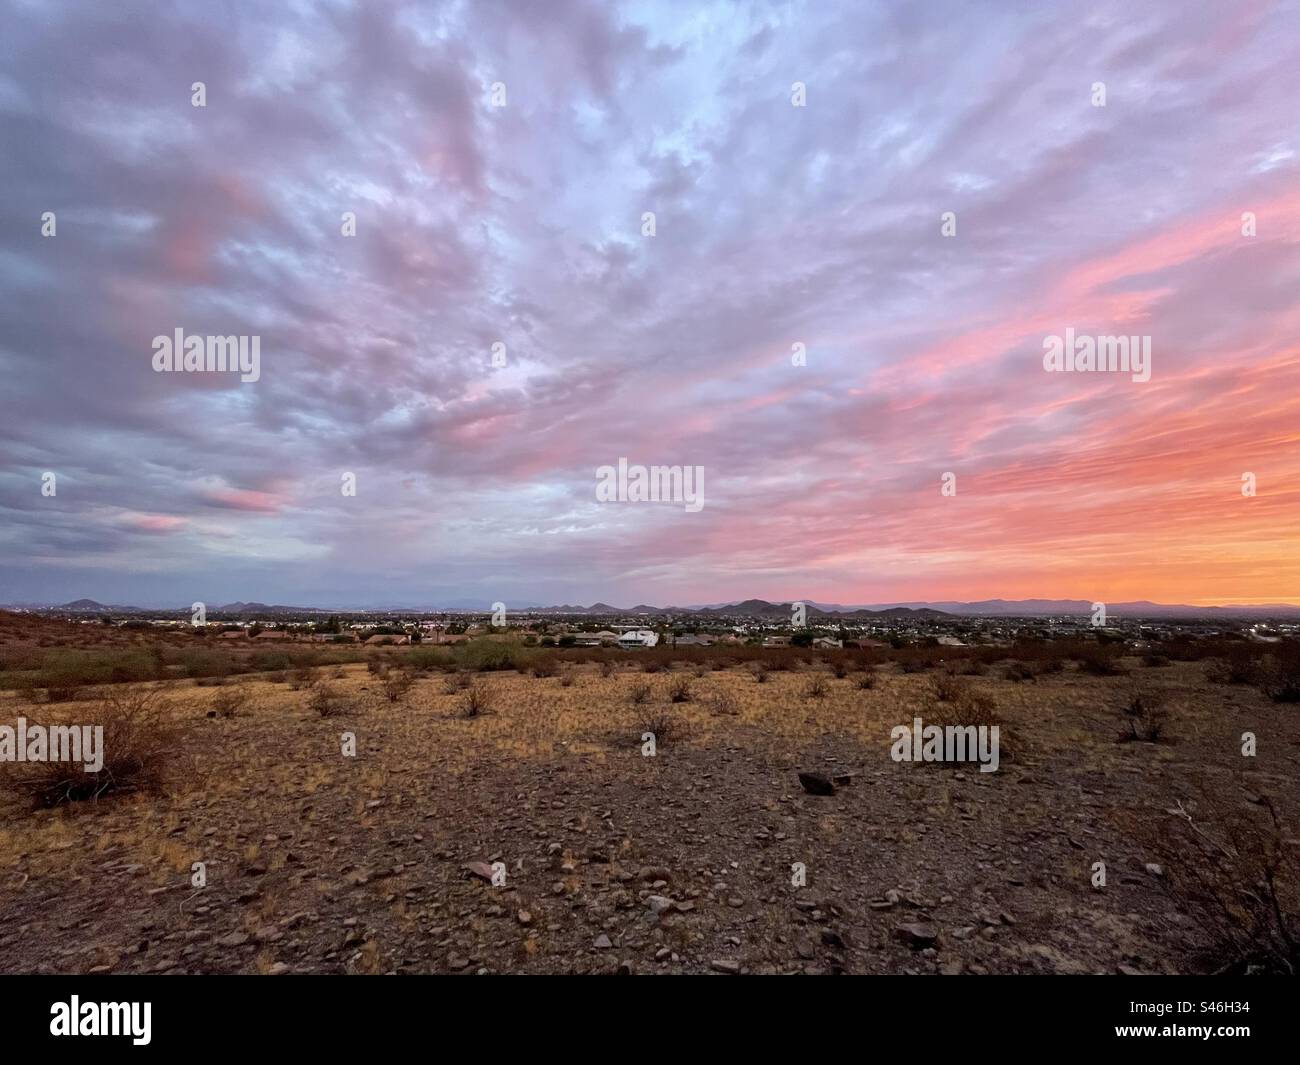 Arizona Sunrise sur le désert de Sonoran à perte de vue, violet doux, orange, bandes de couleur, Lookout Mountain, Phoenix, Arizona Banque D'Images